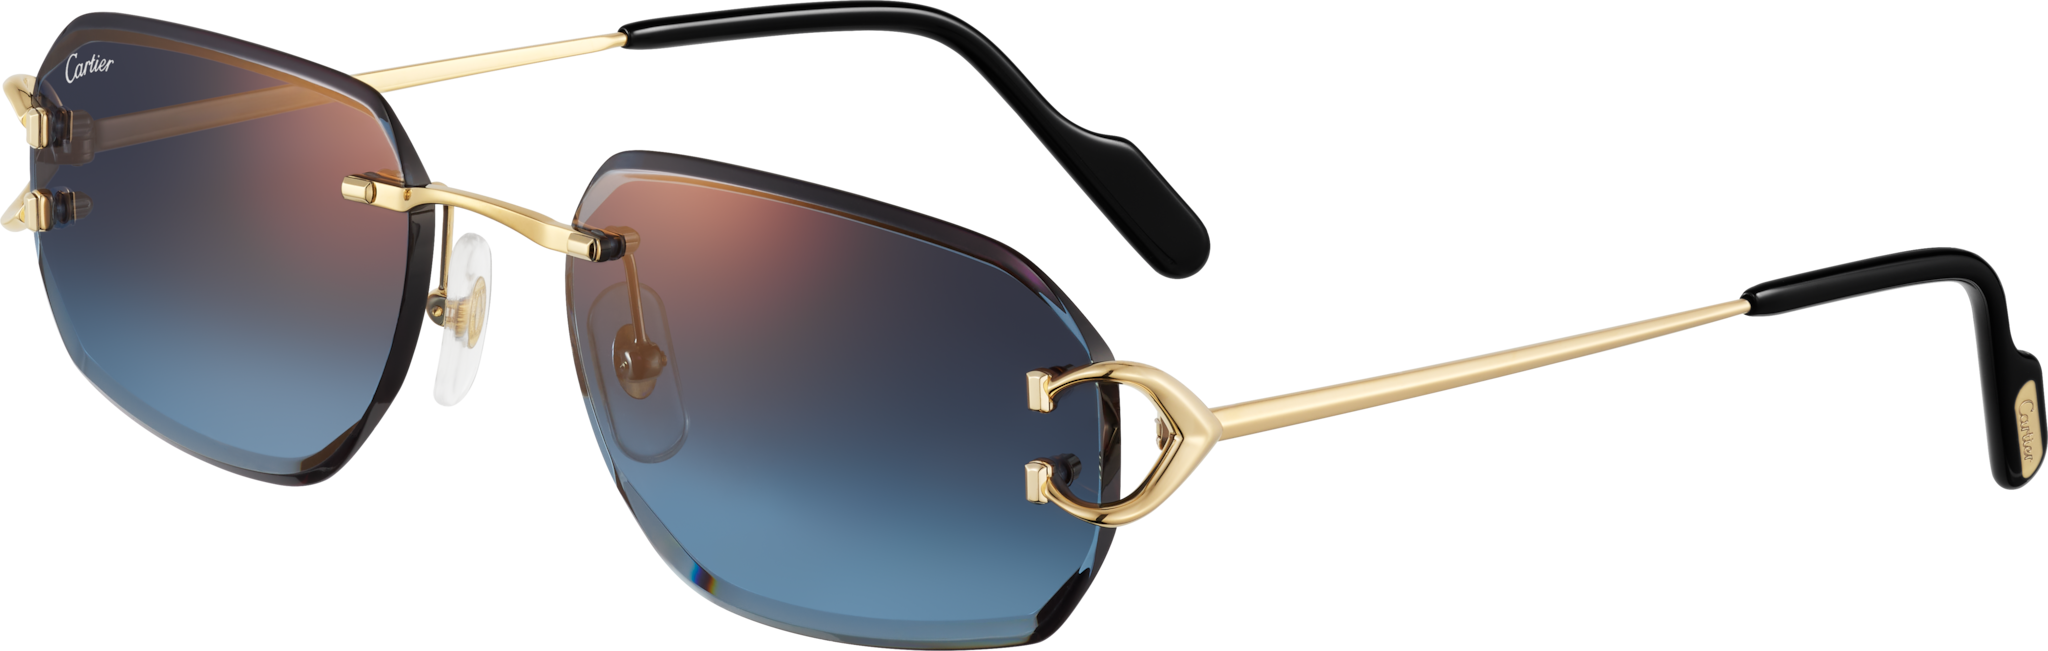 Signature C de Cartier SunglassesSmooth golden-finish metal, blue lenses